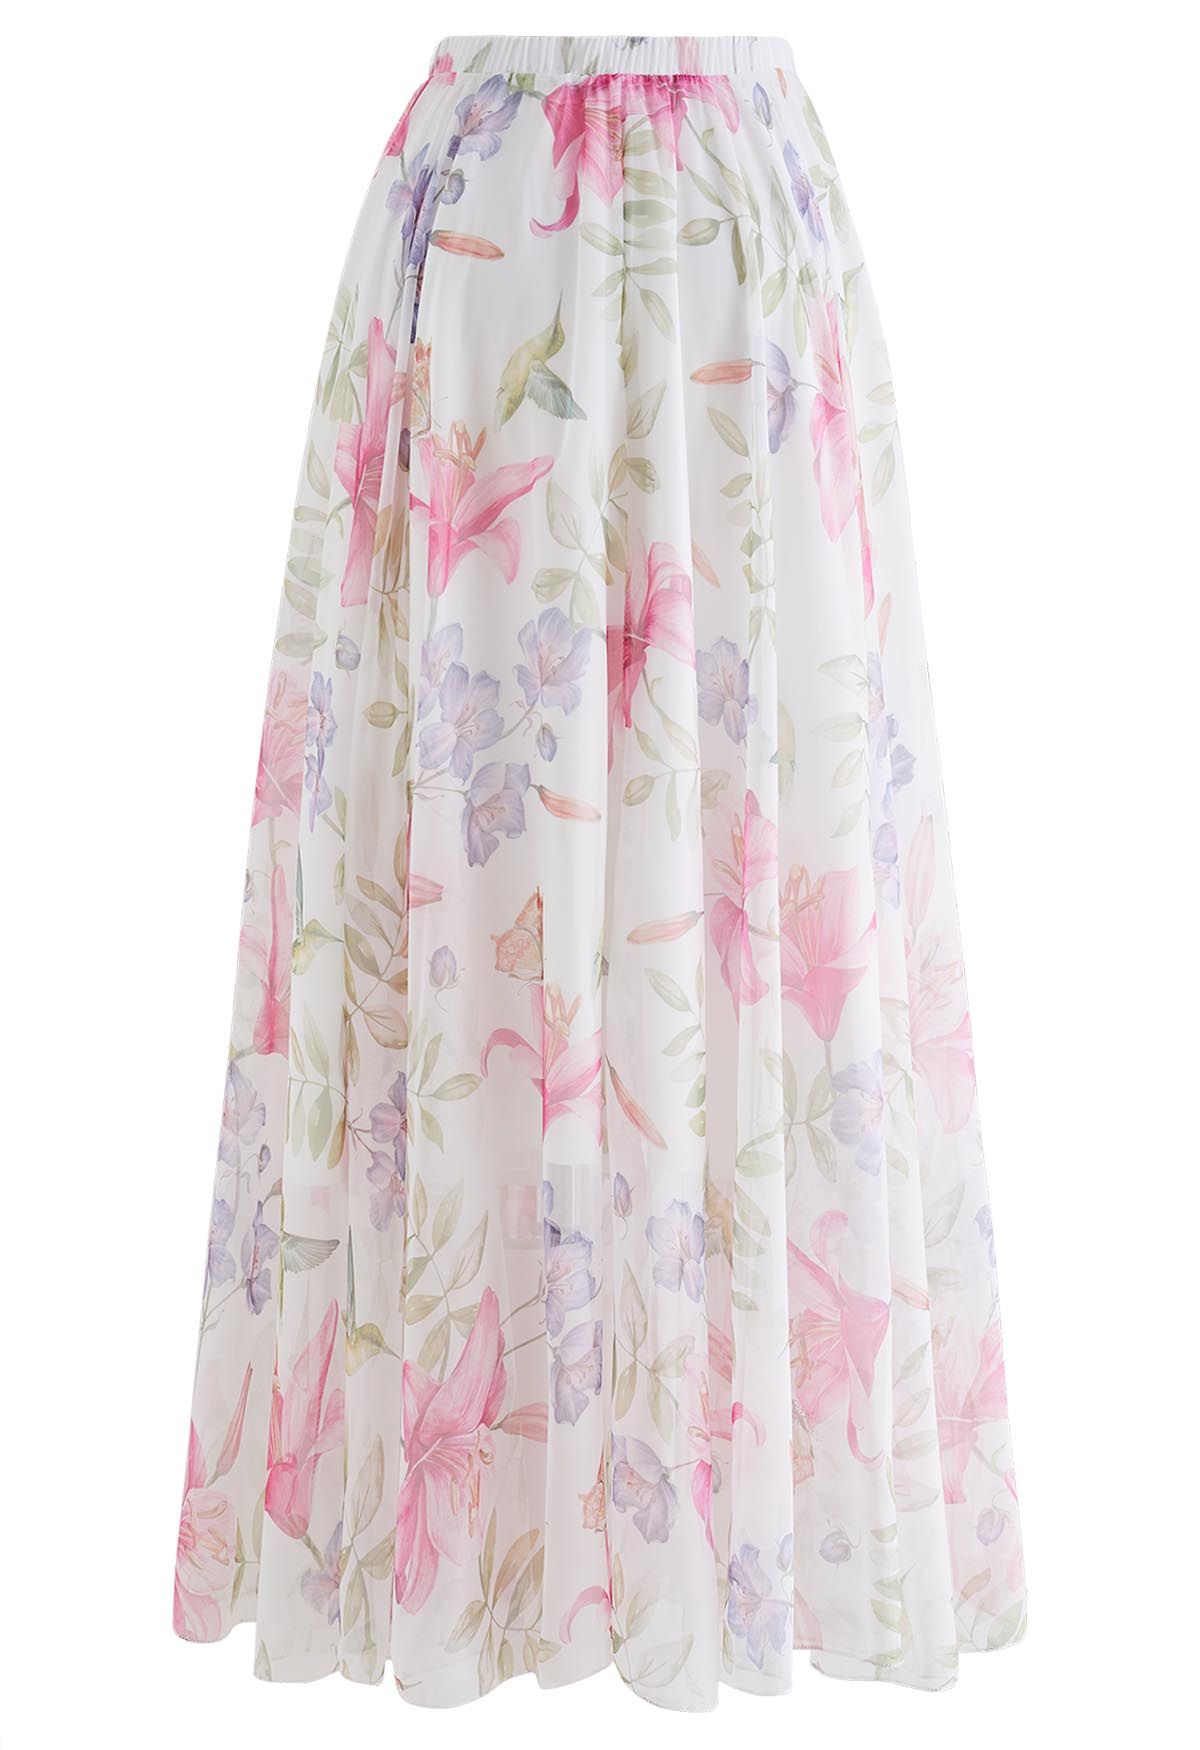 Vernal Garden Printed Chiffon Maxi Skirt